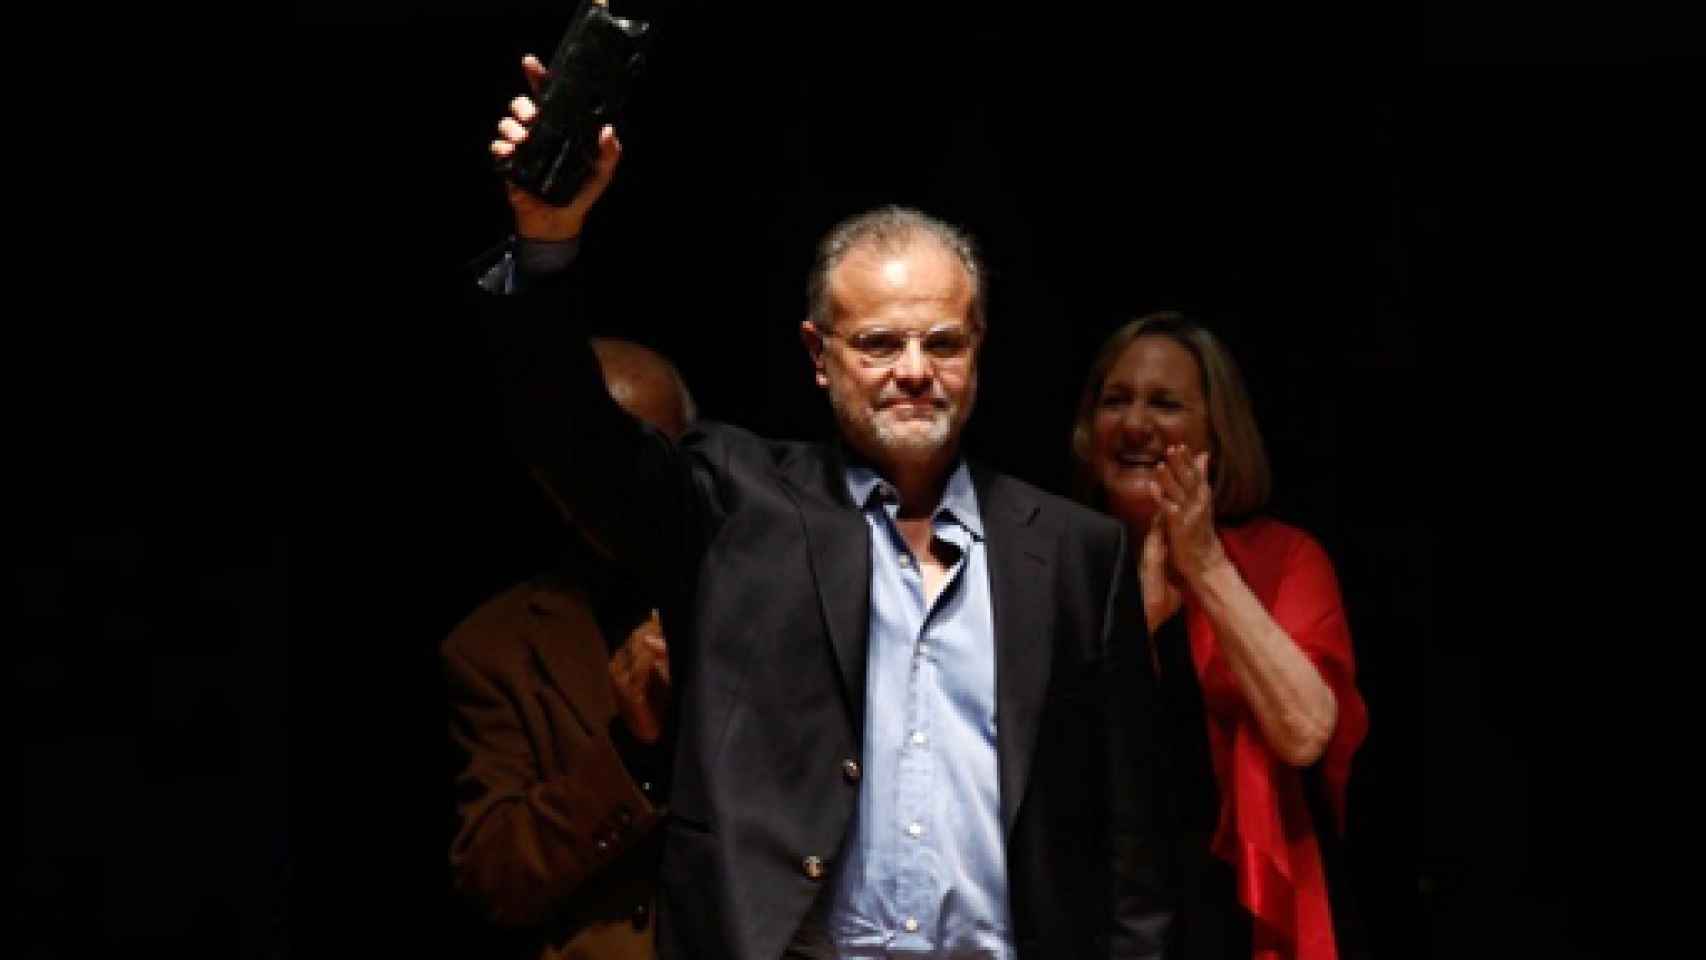 Image: Carlos Franz, premio de novela Vargas Llosa